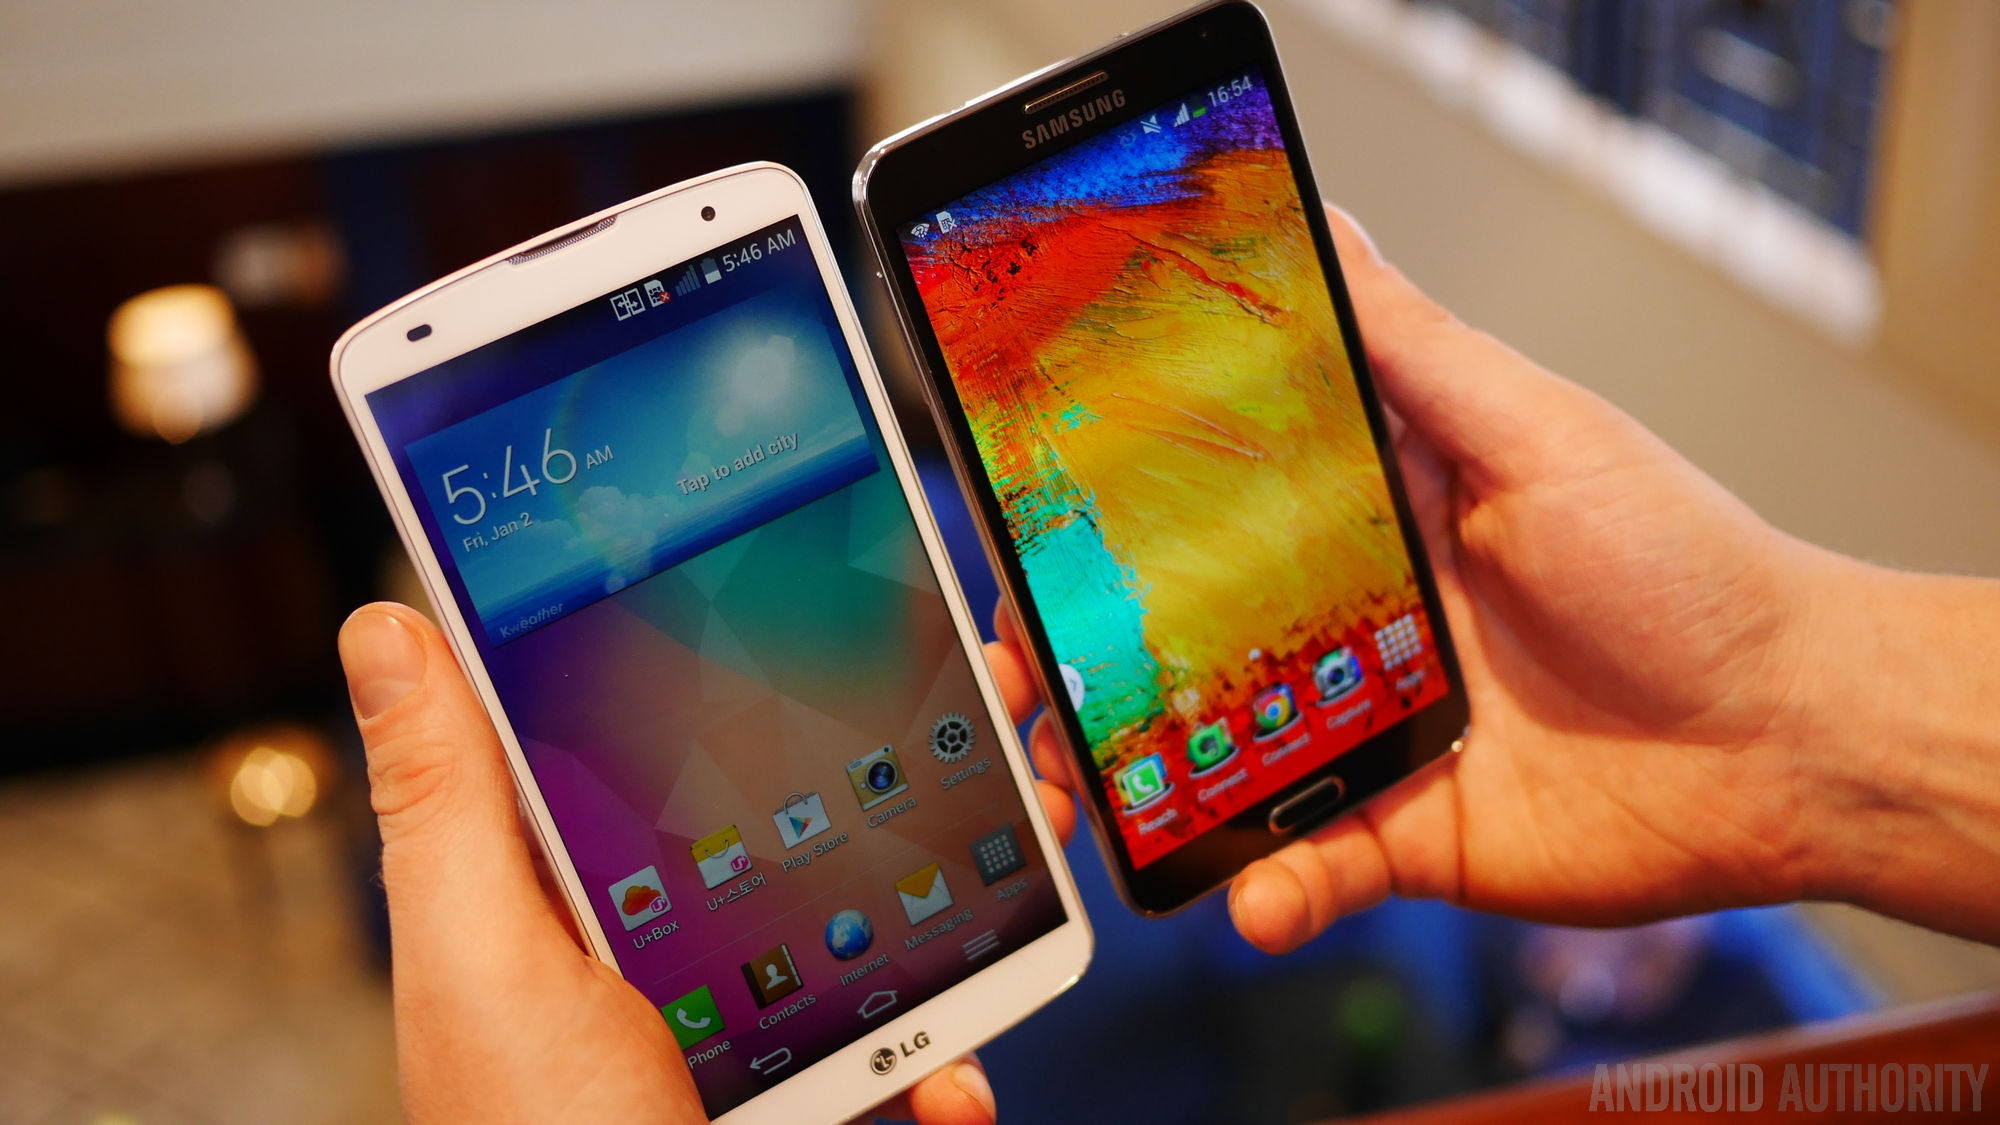 LG G Pro 2 vs Samsung Galaxy Note 3 aa x 2